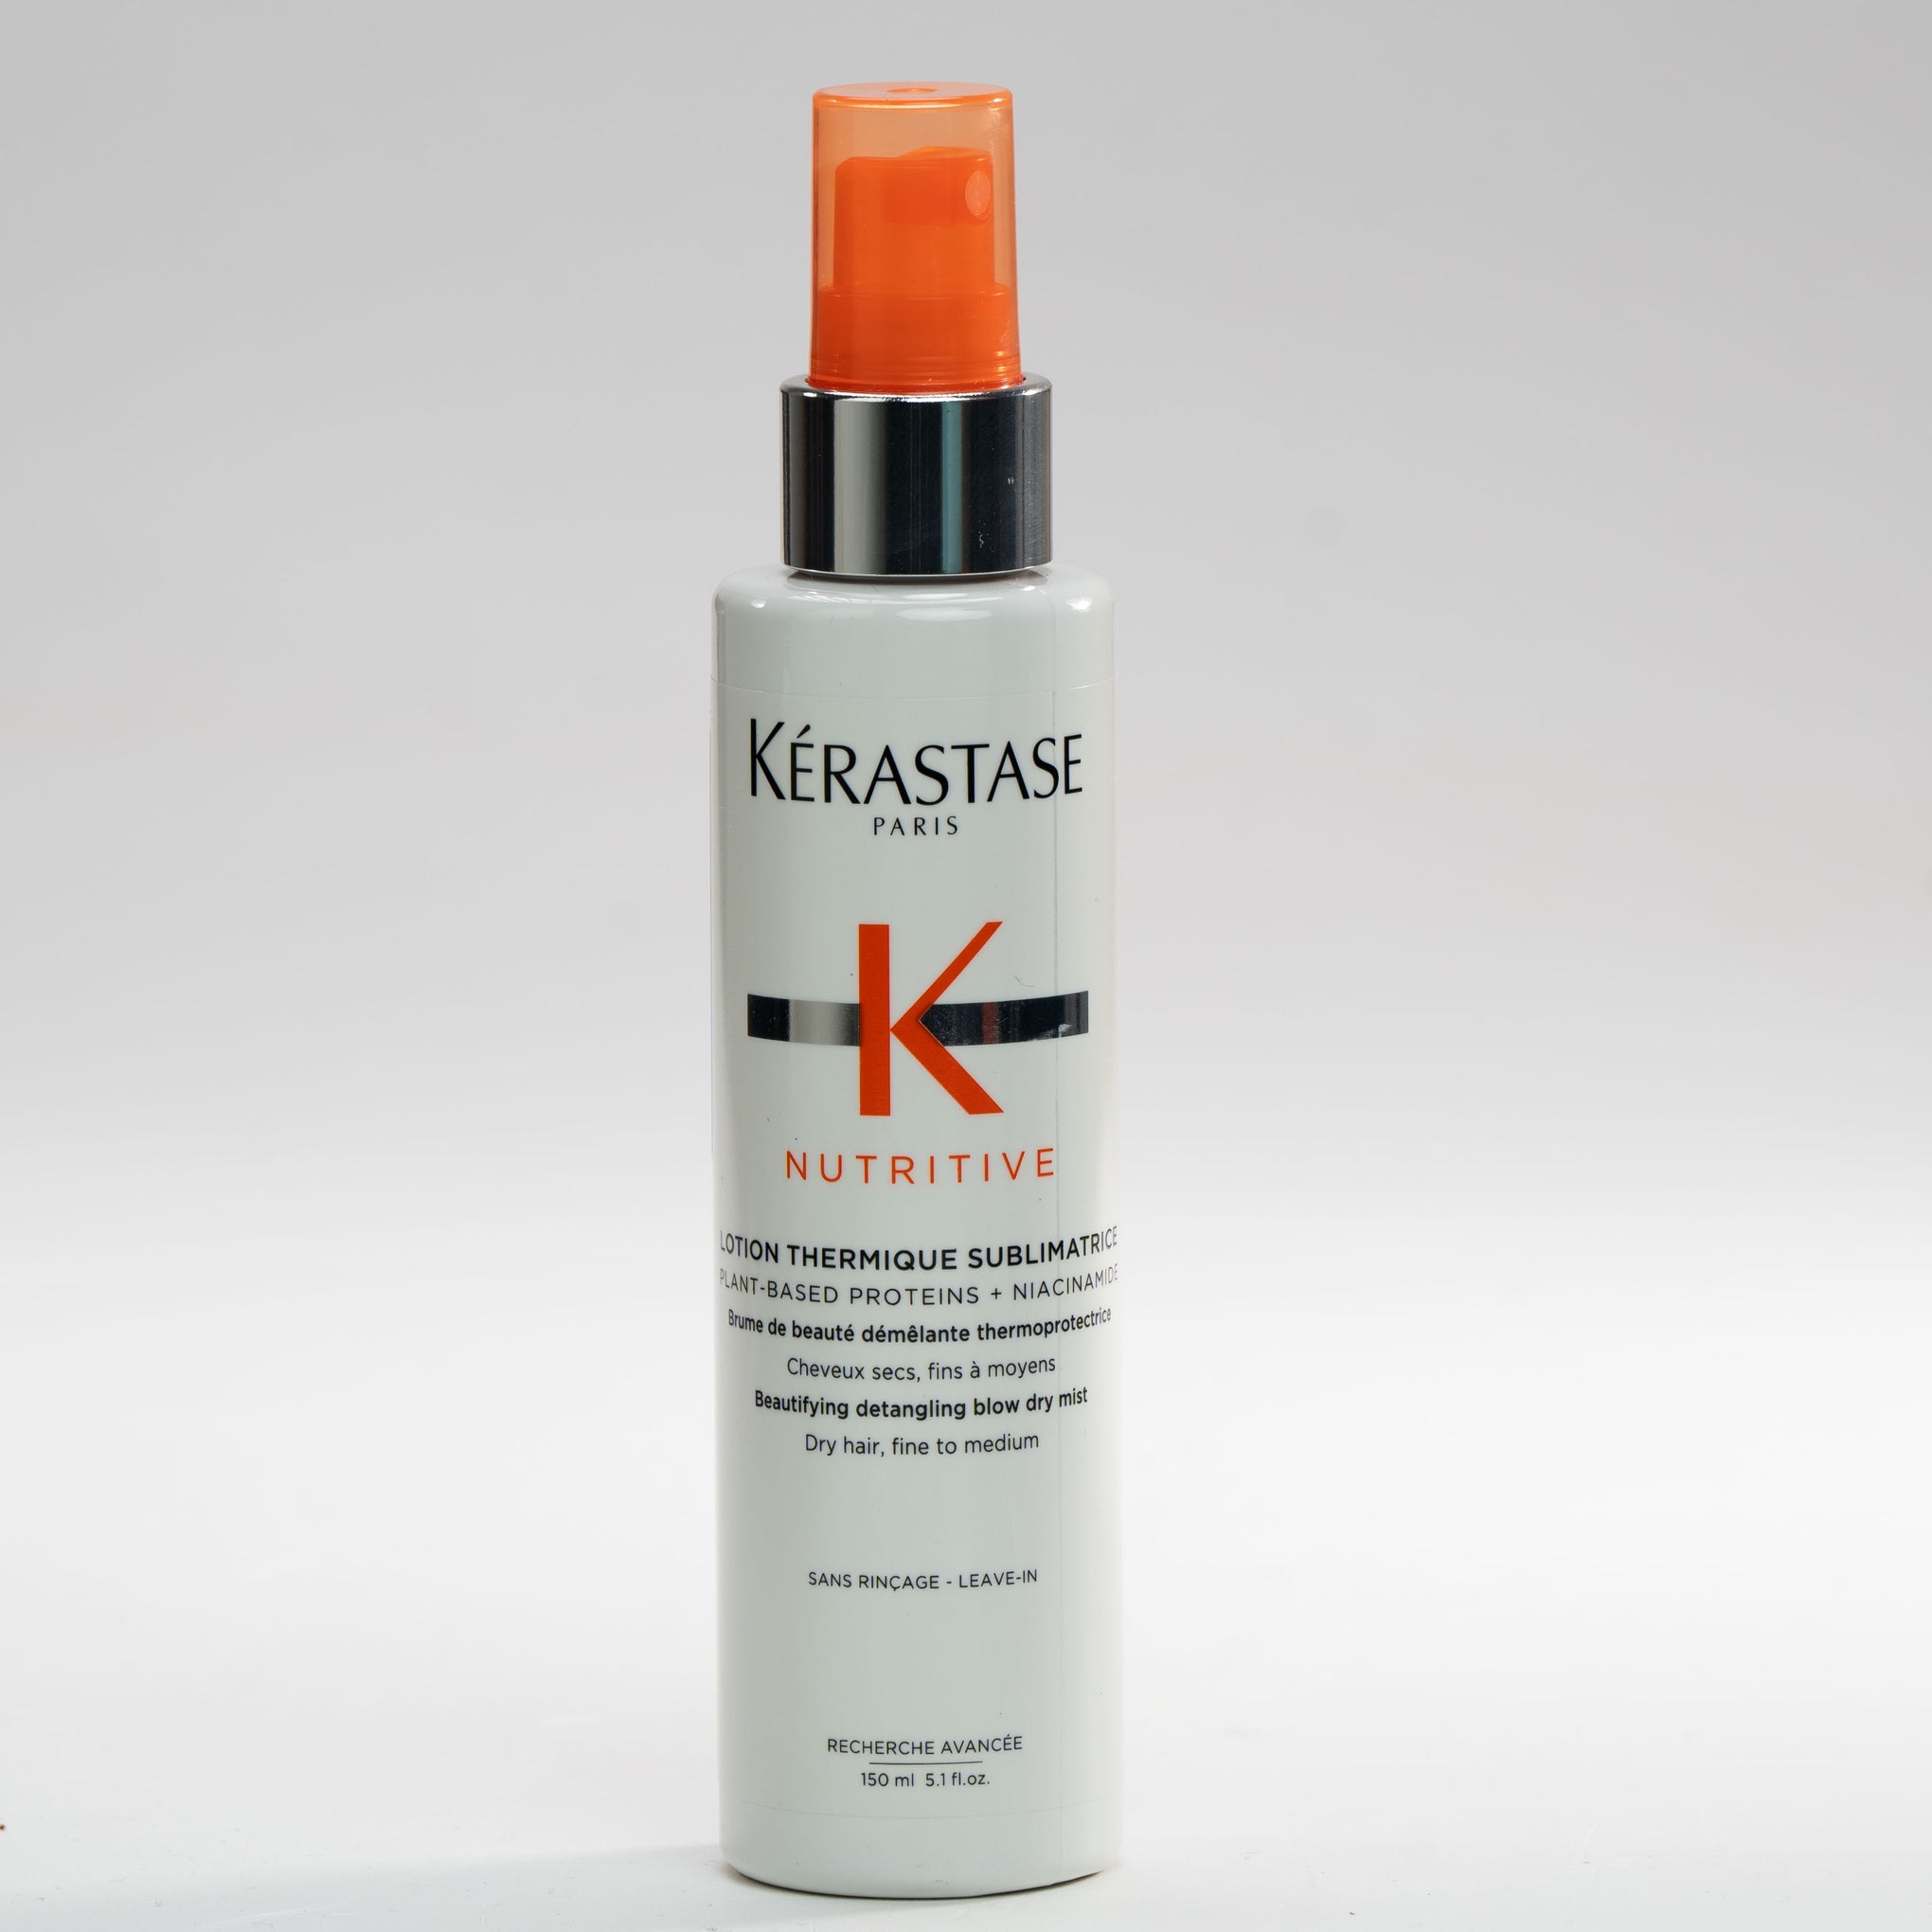 תחליב מגן מחום מתיר קשרים lotion thermique sublimatrice לשיער יבש, דק עד בינוני קרסטס 150 מ"ל   KERASTASE